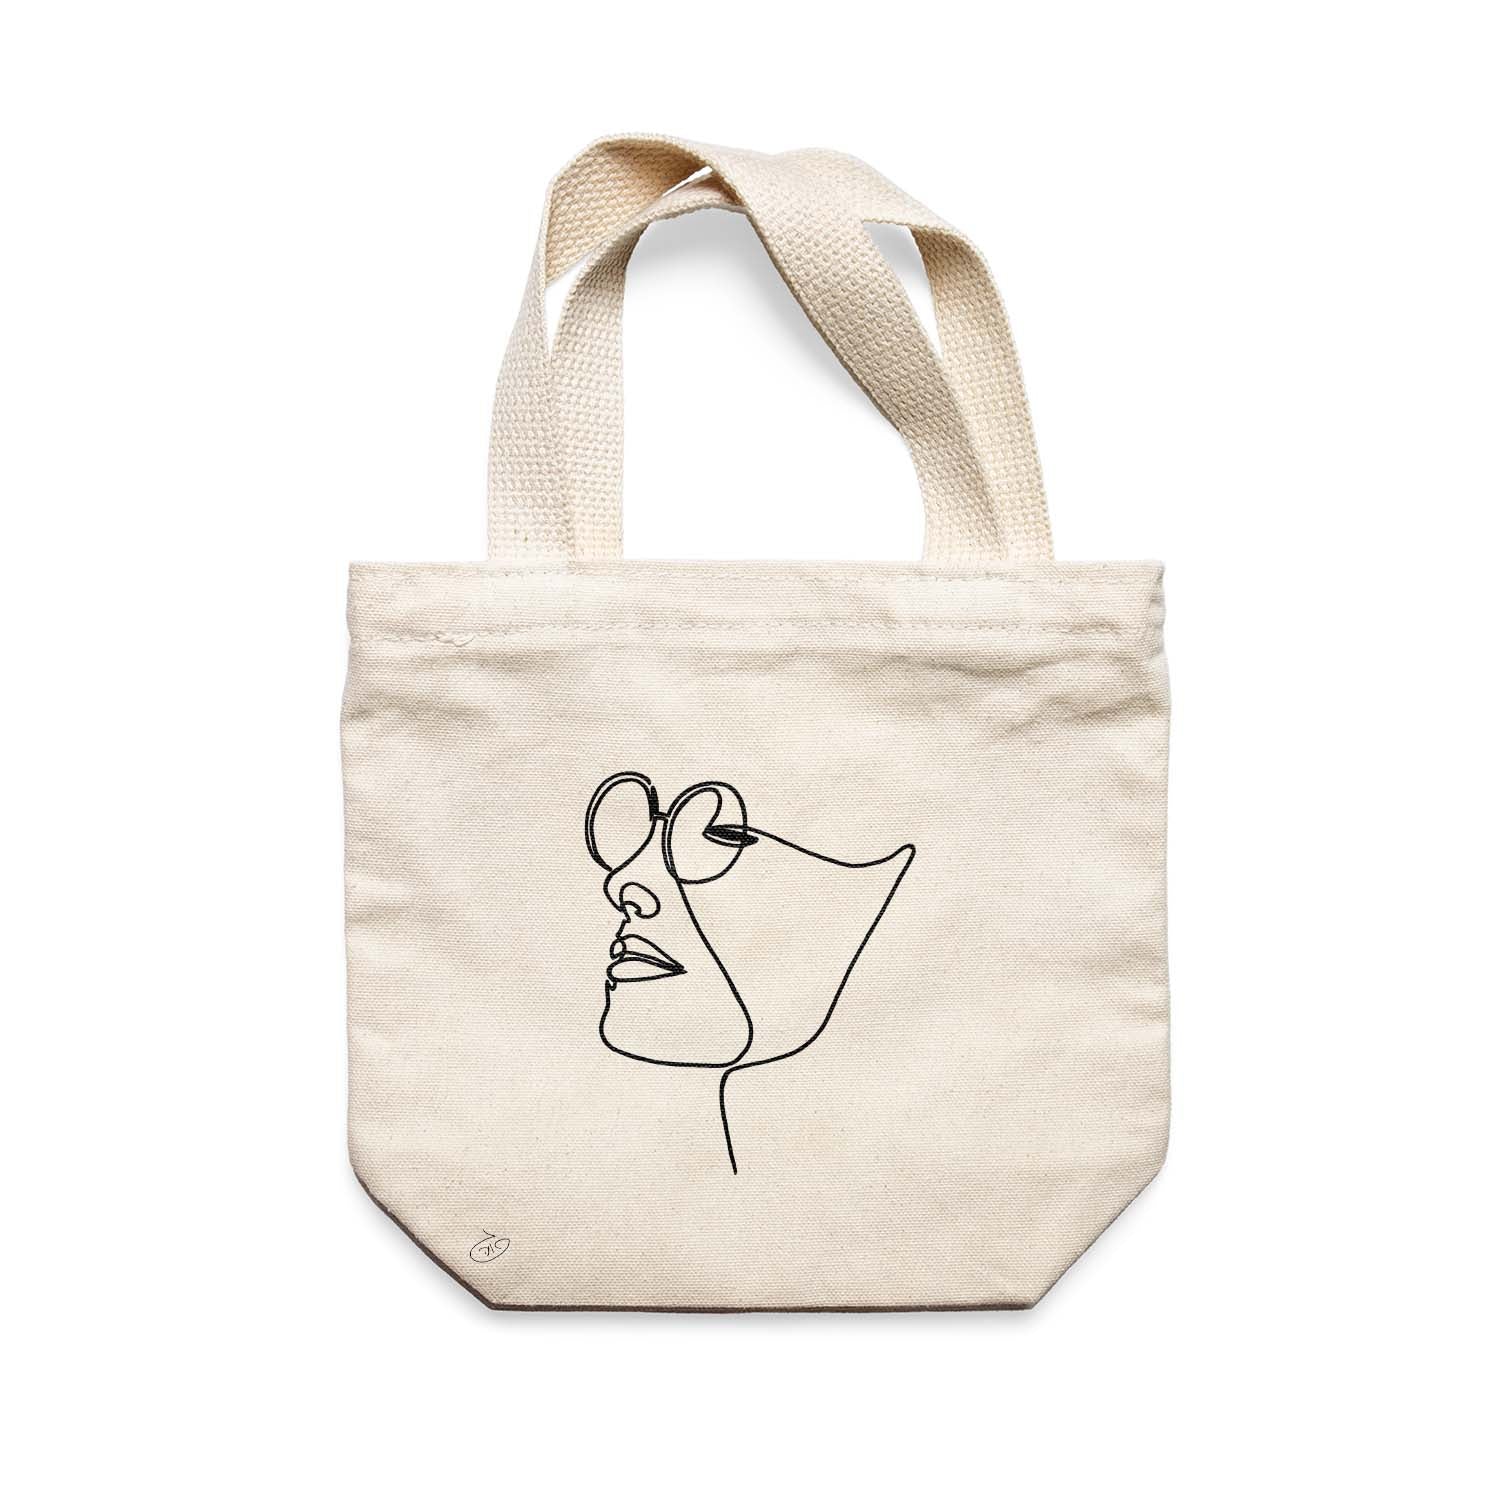 תיק צד לנשים וגברים מבד 100% כותנה טבעית בעיצוב One Line - Mi amor Tote Bag מציור מקורי של גאיה